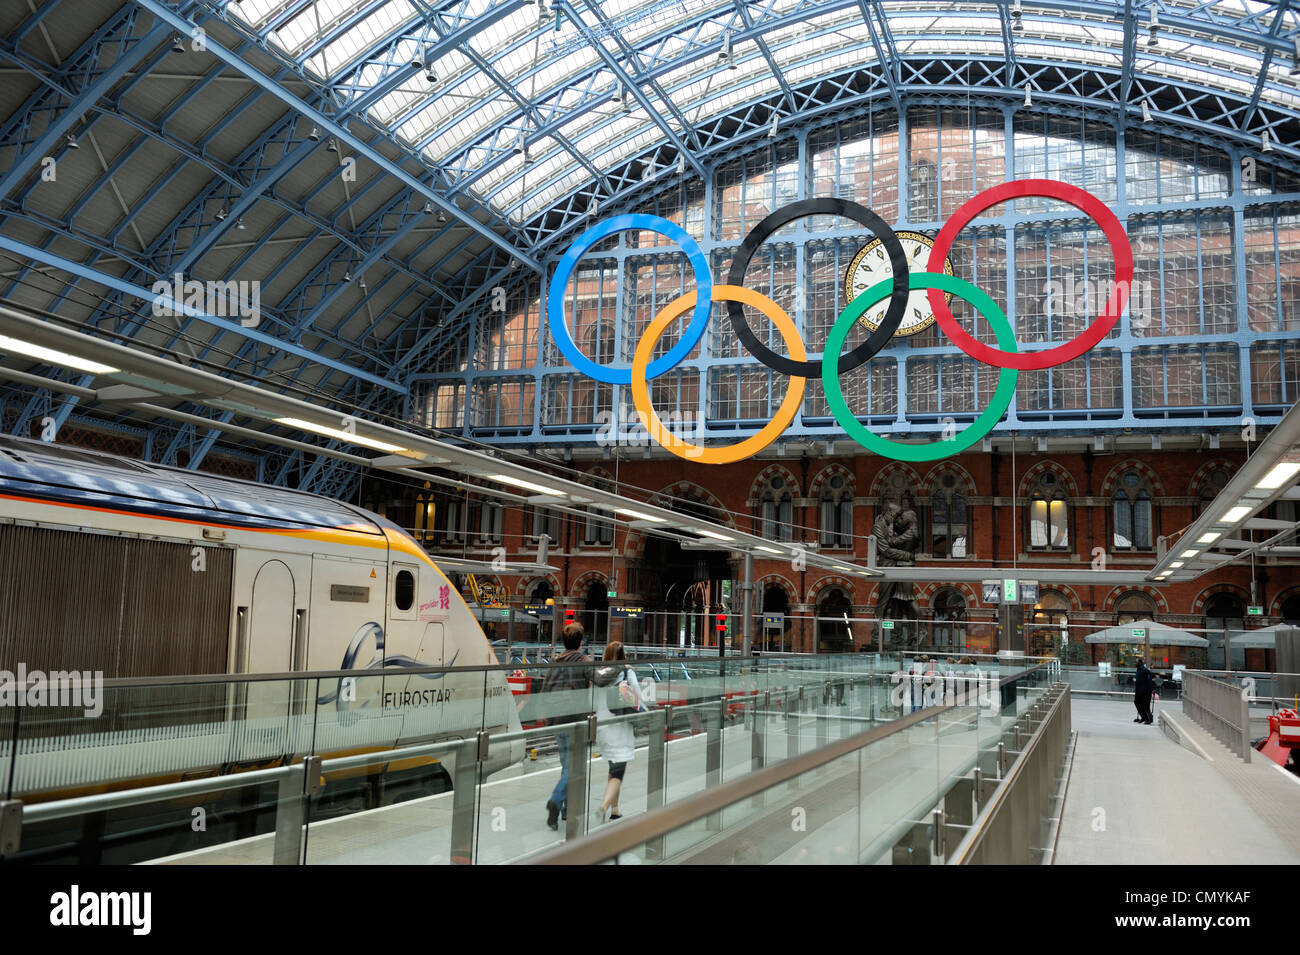 Regno Unito, Londra, St. Pancras treno Eurostar e tcouple sulla piattaforma con il simbolo dei Giochi Olimpici Foto Stock